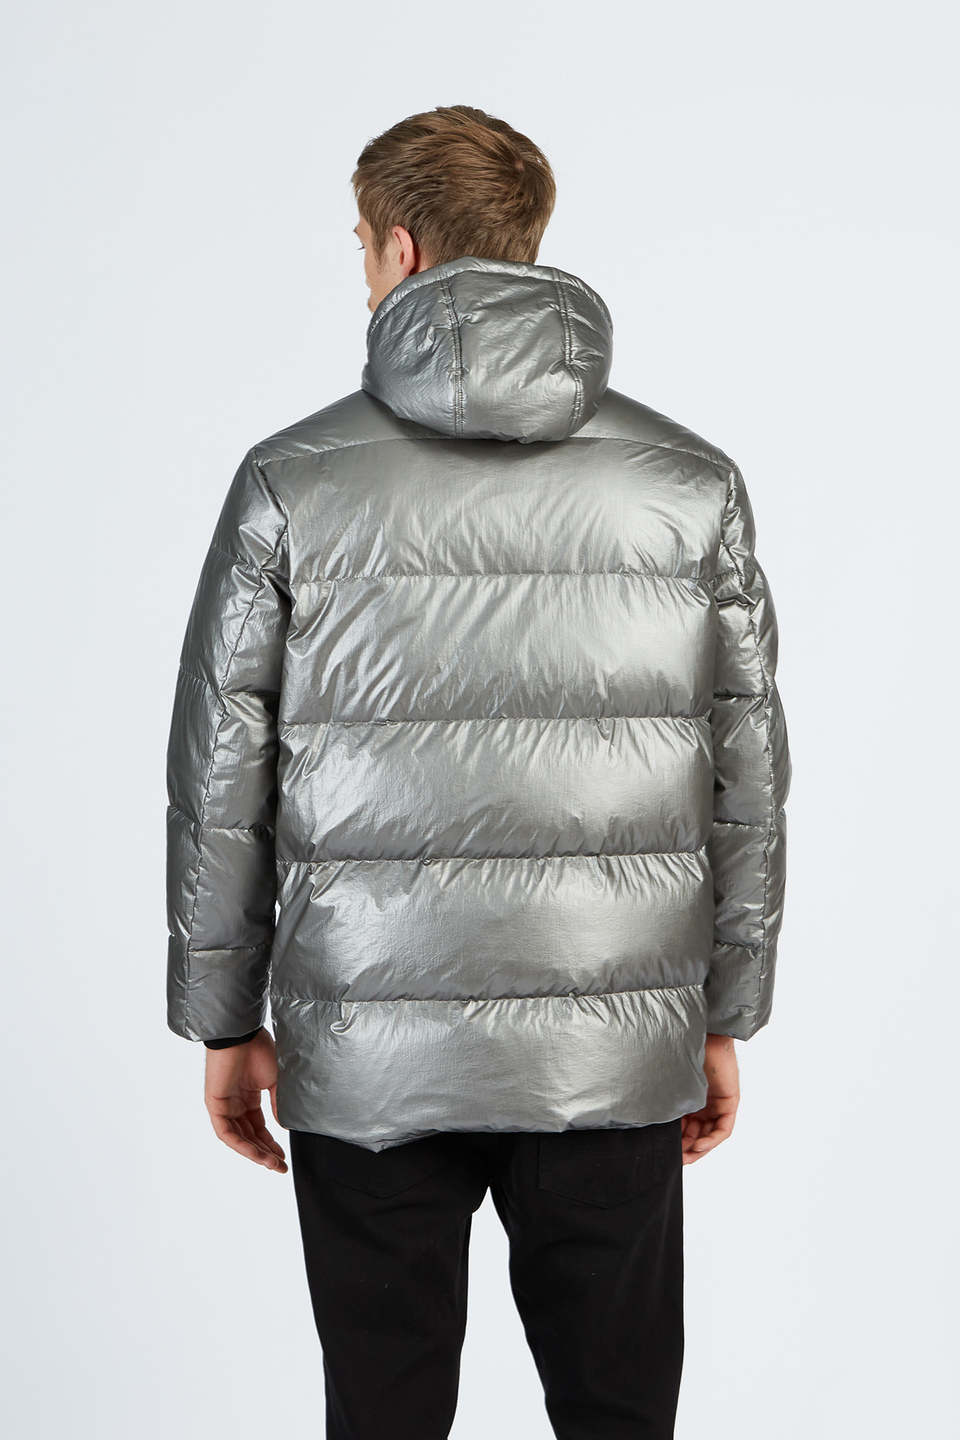 Men’s padded down jacket Jet Set with hood regular fit model | La Martina - Official Online Shop